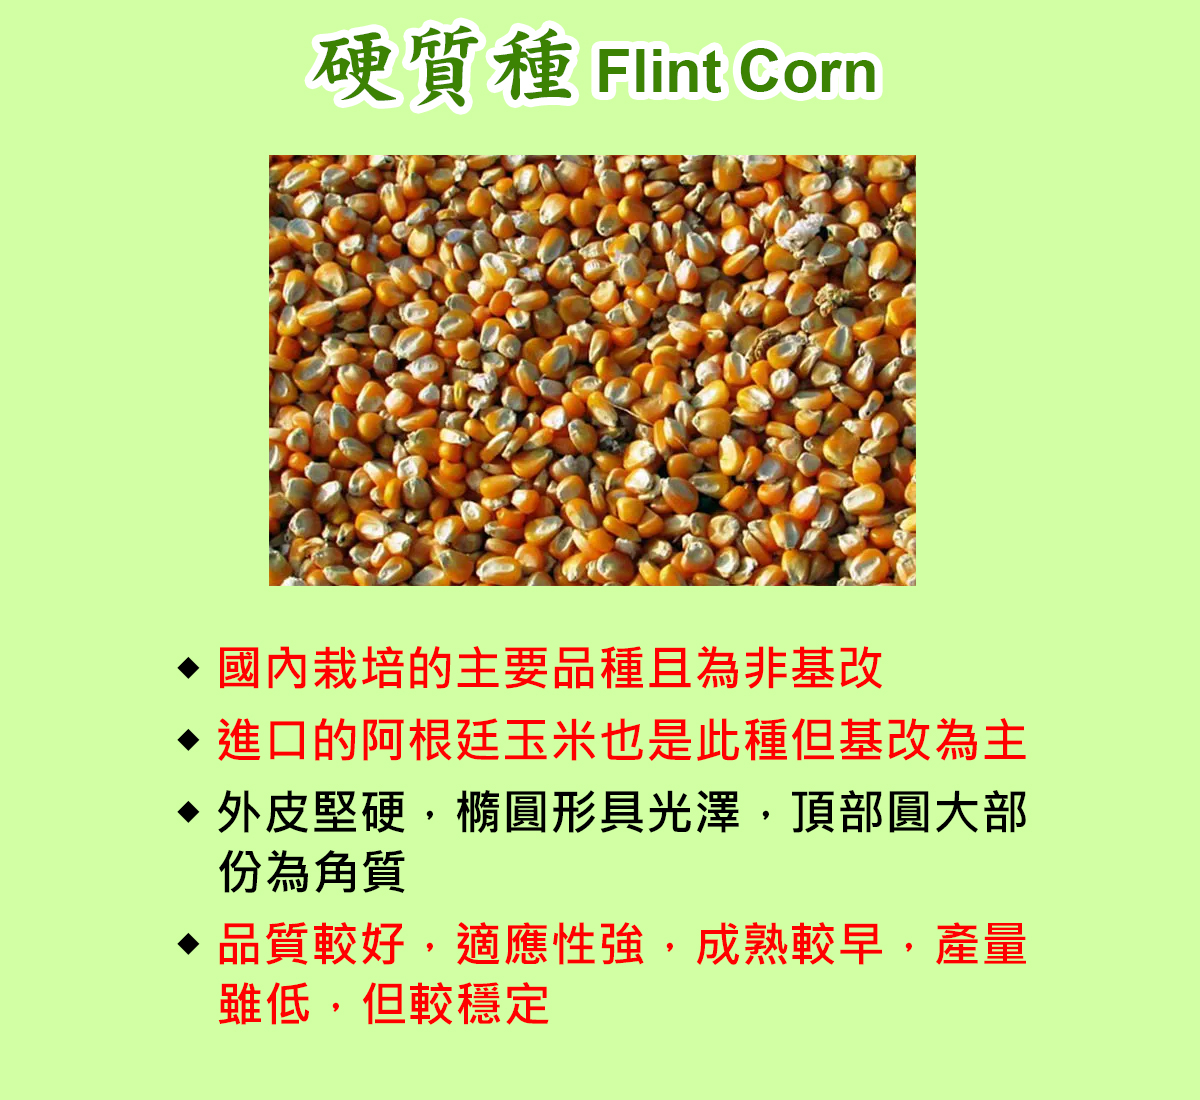 硬質種玉米